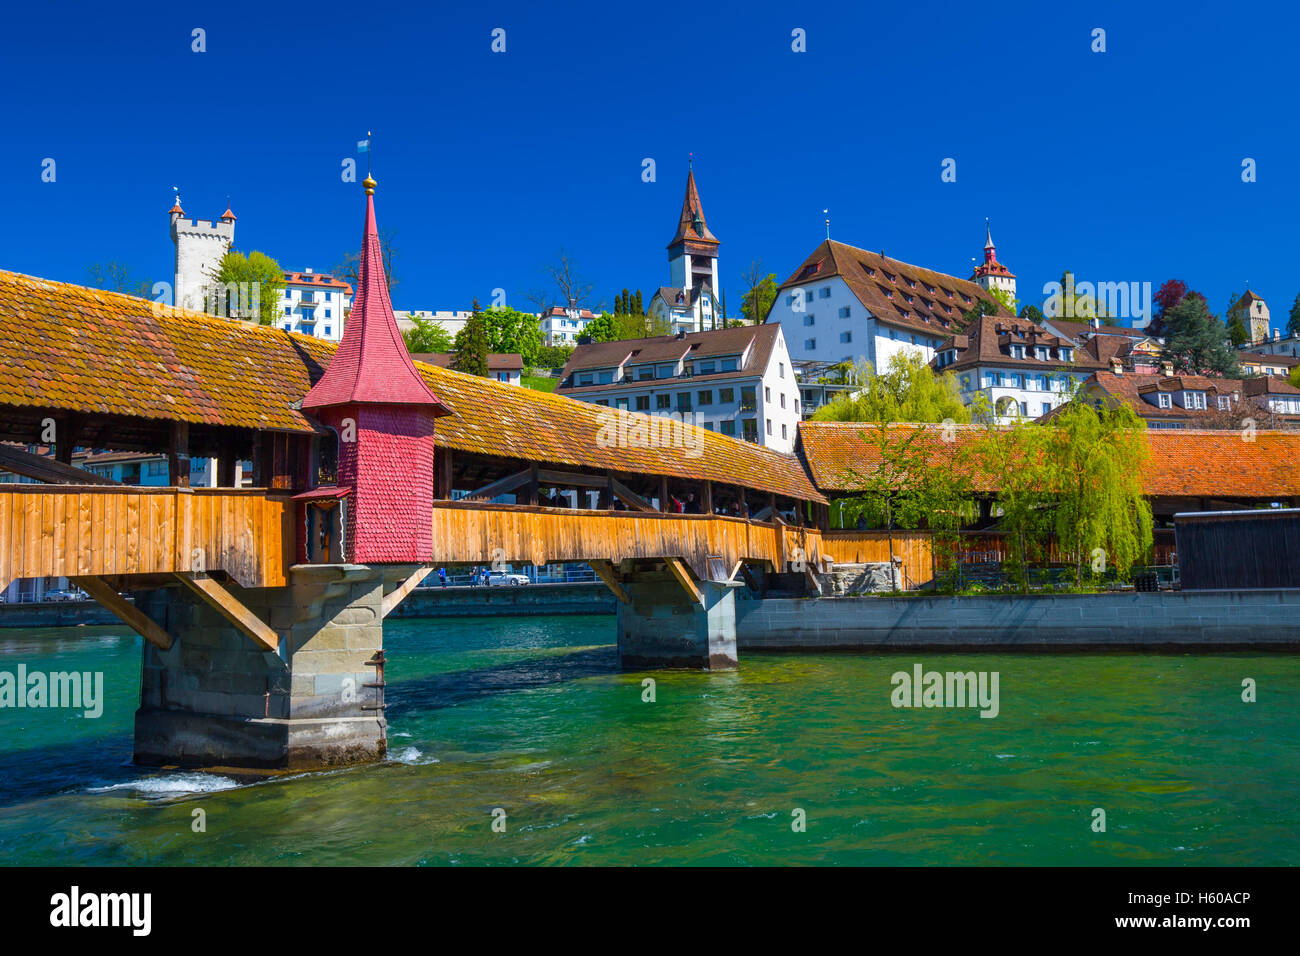 Spreuer bridge in the old city center of Luzern, Luzern, Switzerland Stock Photo